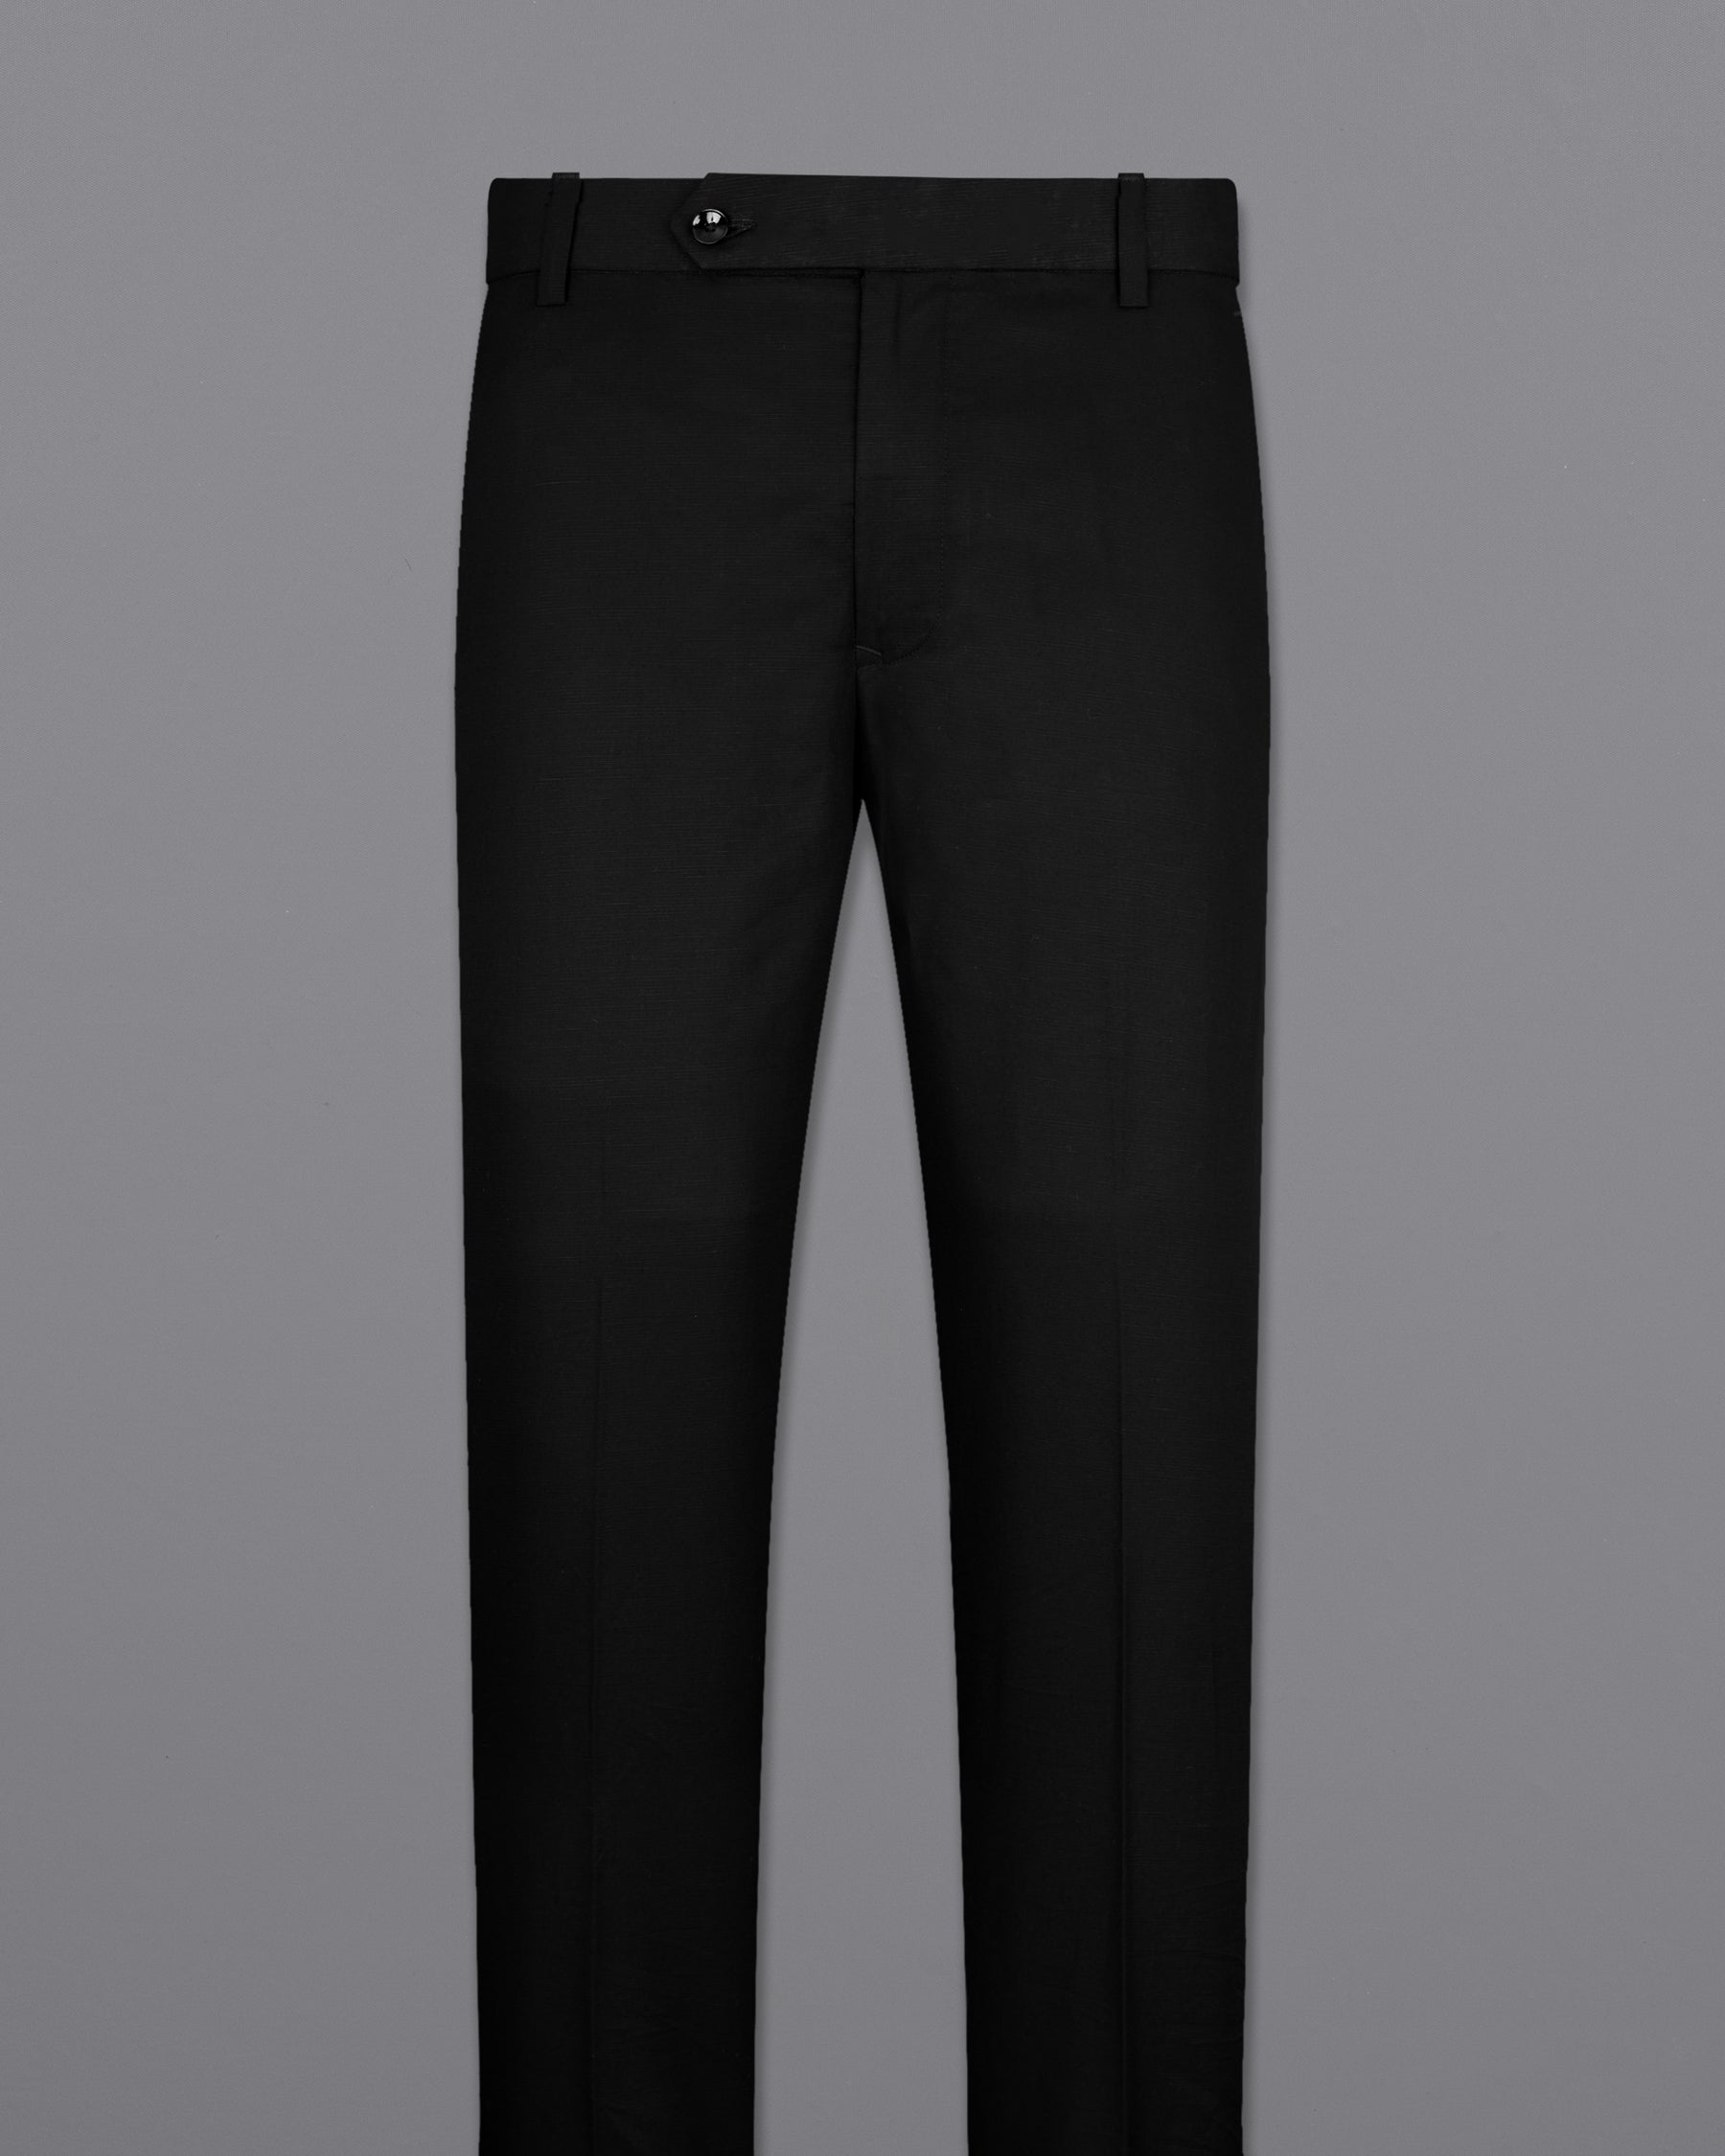 Jade Black Stretchable Luxurious Linen Pants T2211-28, T2211-30, T2211-32, T2211-34, T2211-36, T2211-38, T2211-40, T2211-42, T2211-44